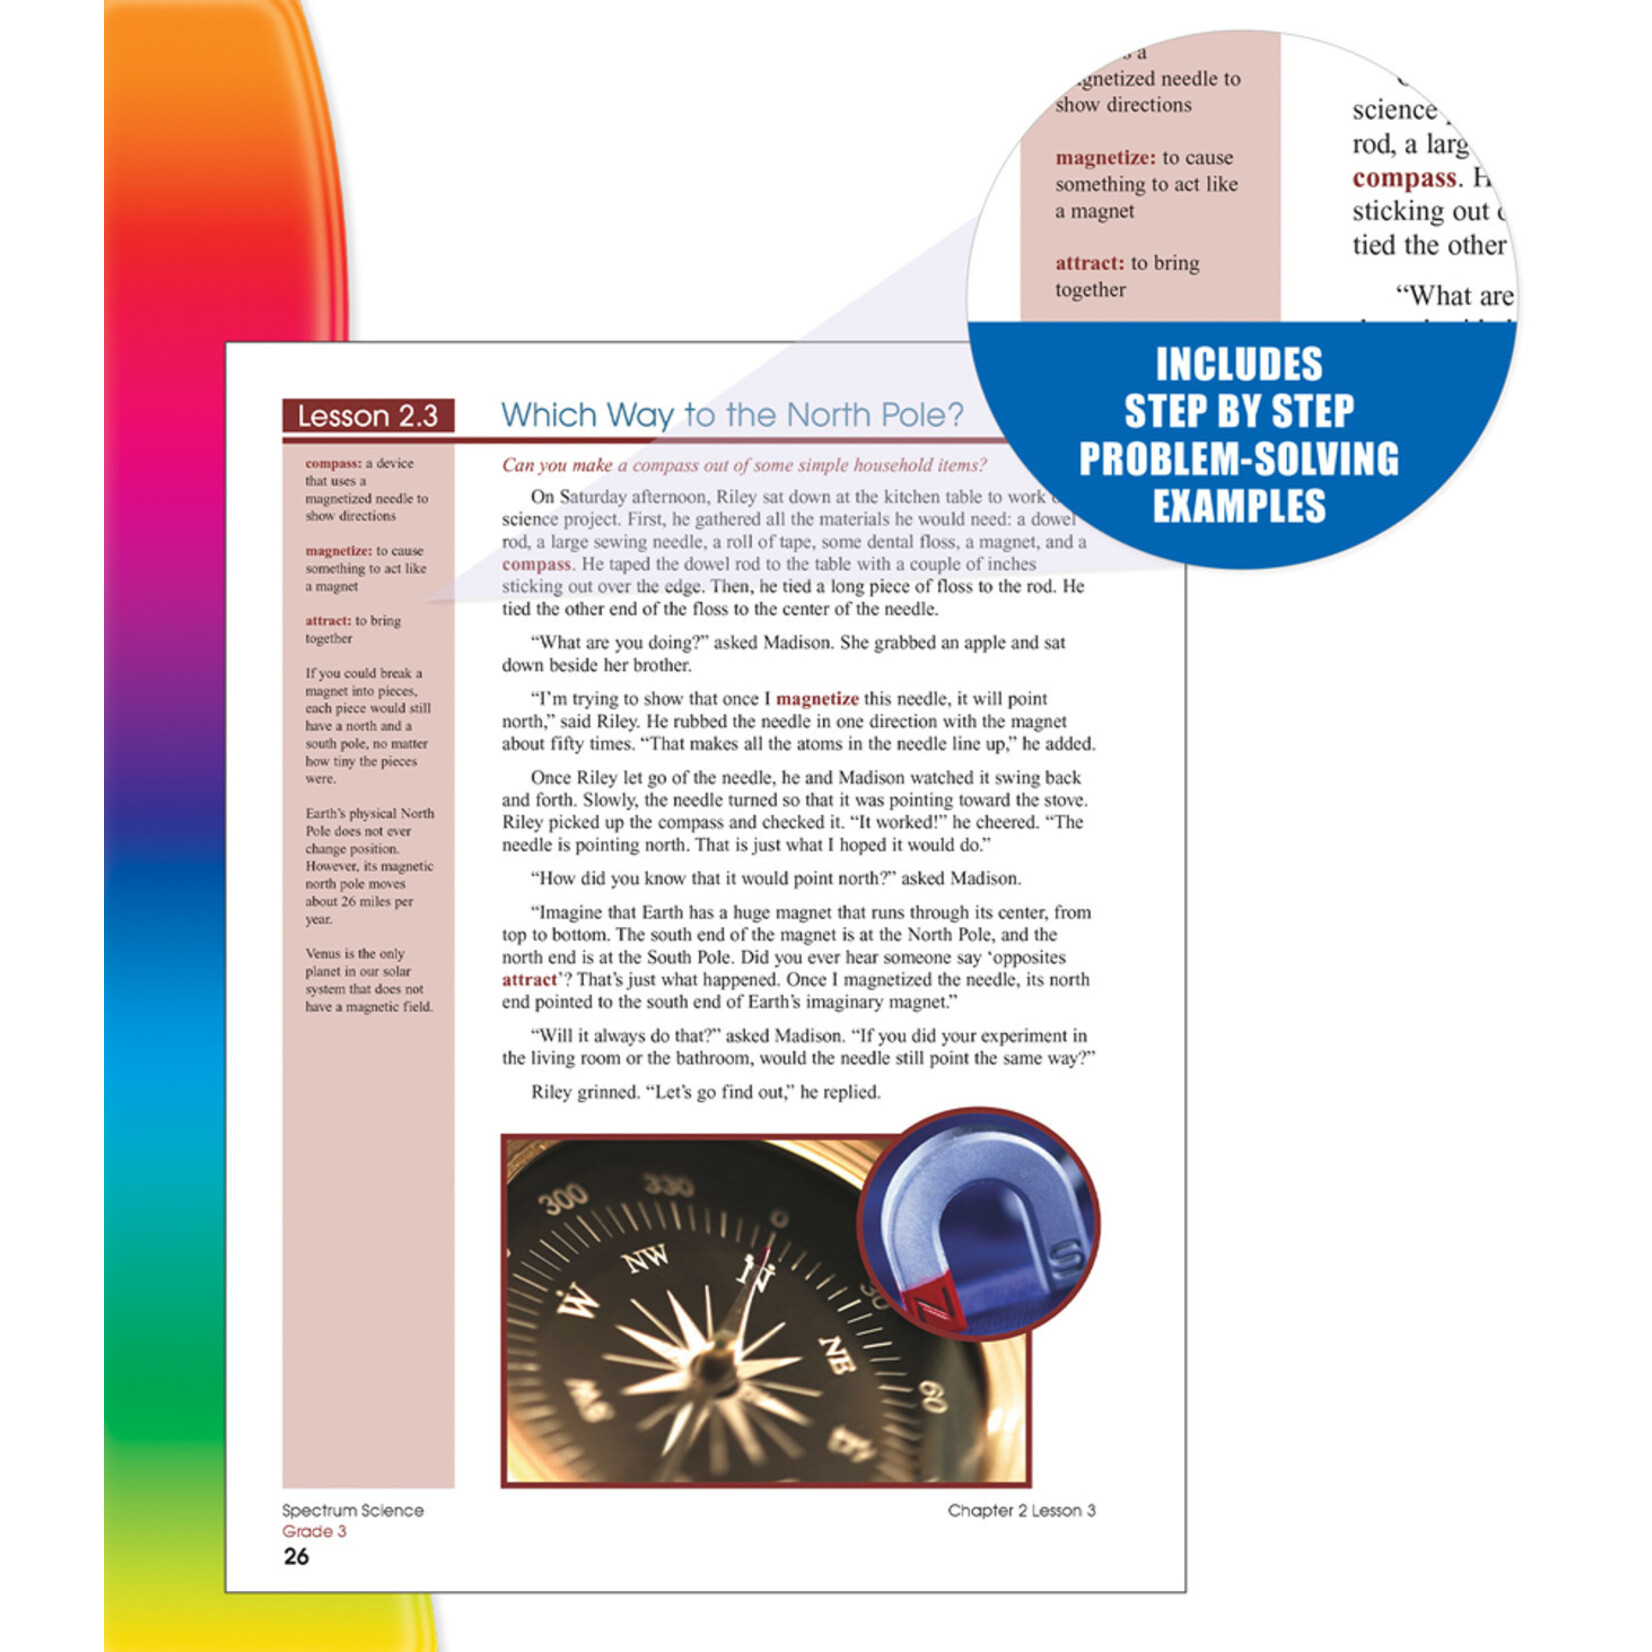 CARSON DELLOSA PUBLISHING CO Spectrum Science Workbook Grade 3 Paperback